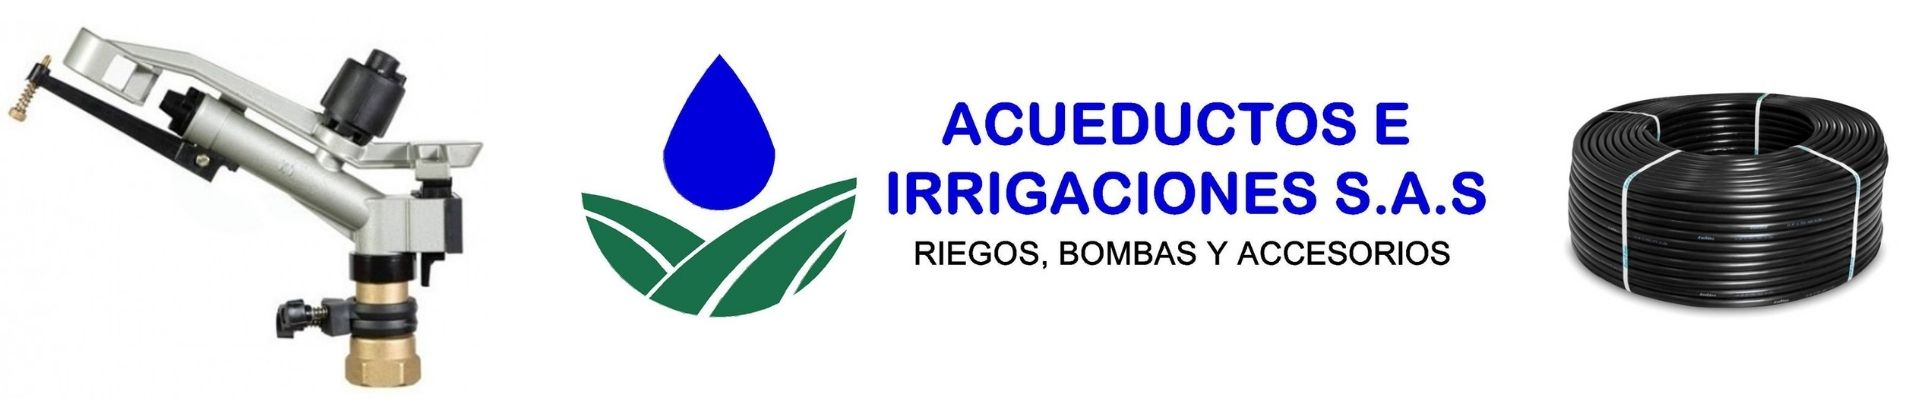 Banner Acueductos e Irrigaciones